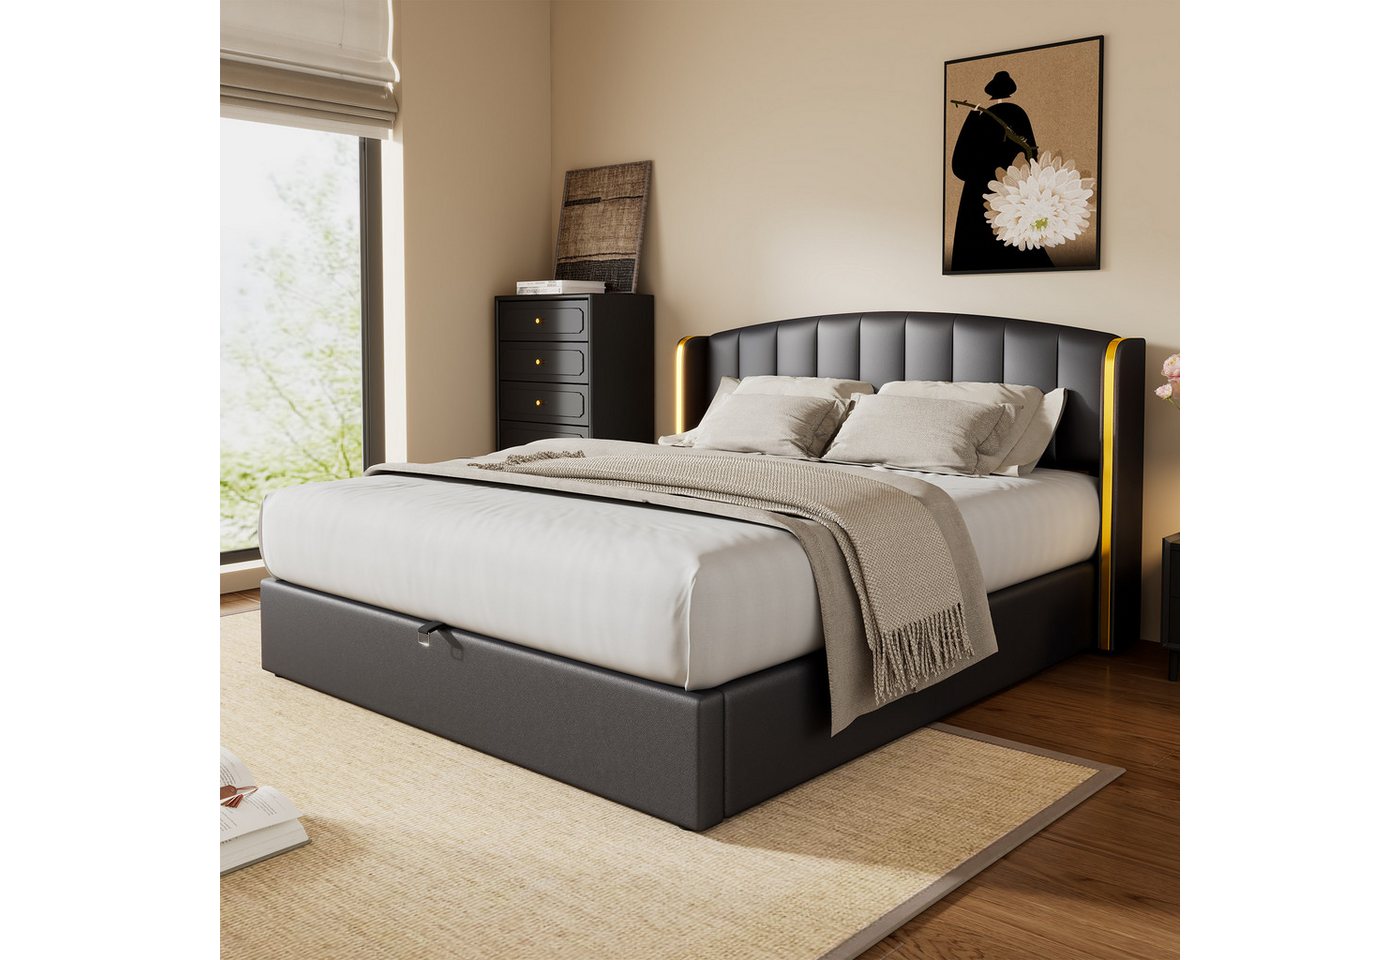 REDOM Polsterbett Hydraulisches Bett (180*200cm), mit goldgerandetes Ohrendesign, Bettkasten, Lattenrost und Kopfteil von REDOM